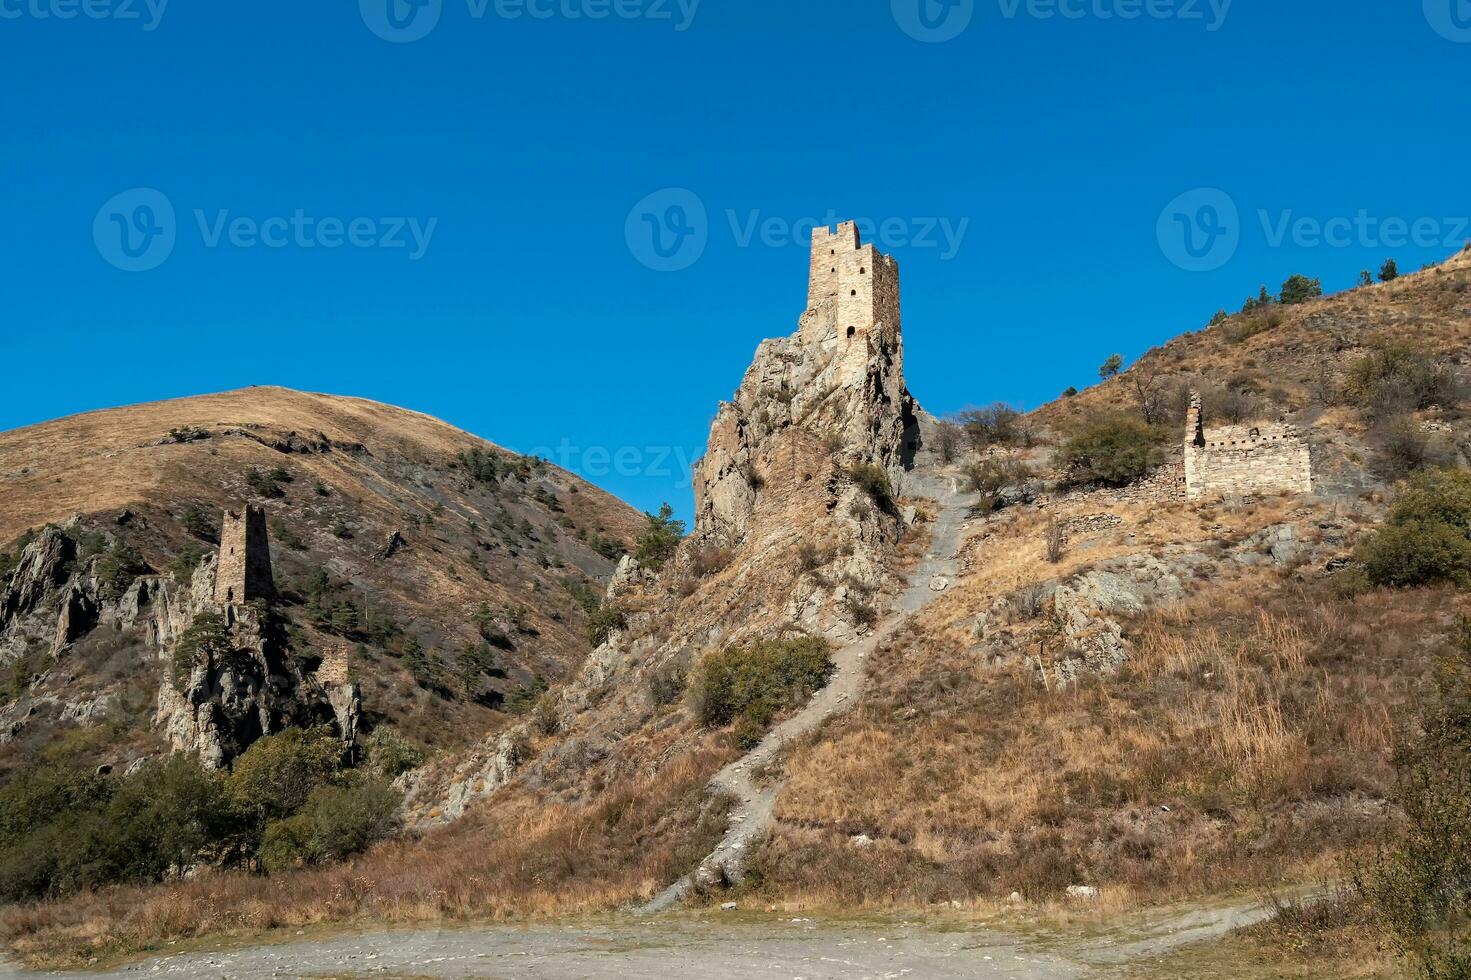 soleado tarde en el Cáucaso montañas. medieval torre complejo vovnushki, uno de el auténtico medieval tipo castillo torre pueblos, situado en el extremidad de el montaña rango en ingushetia foto